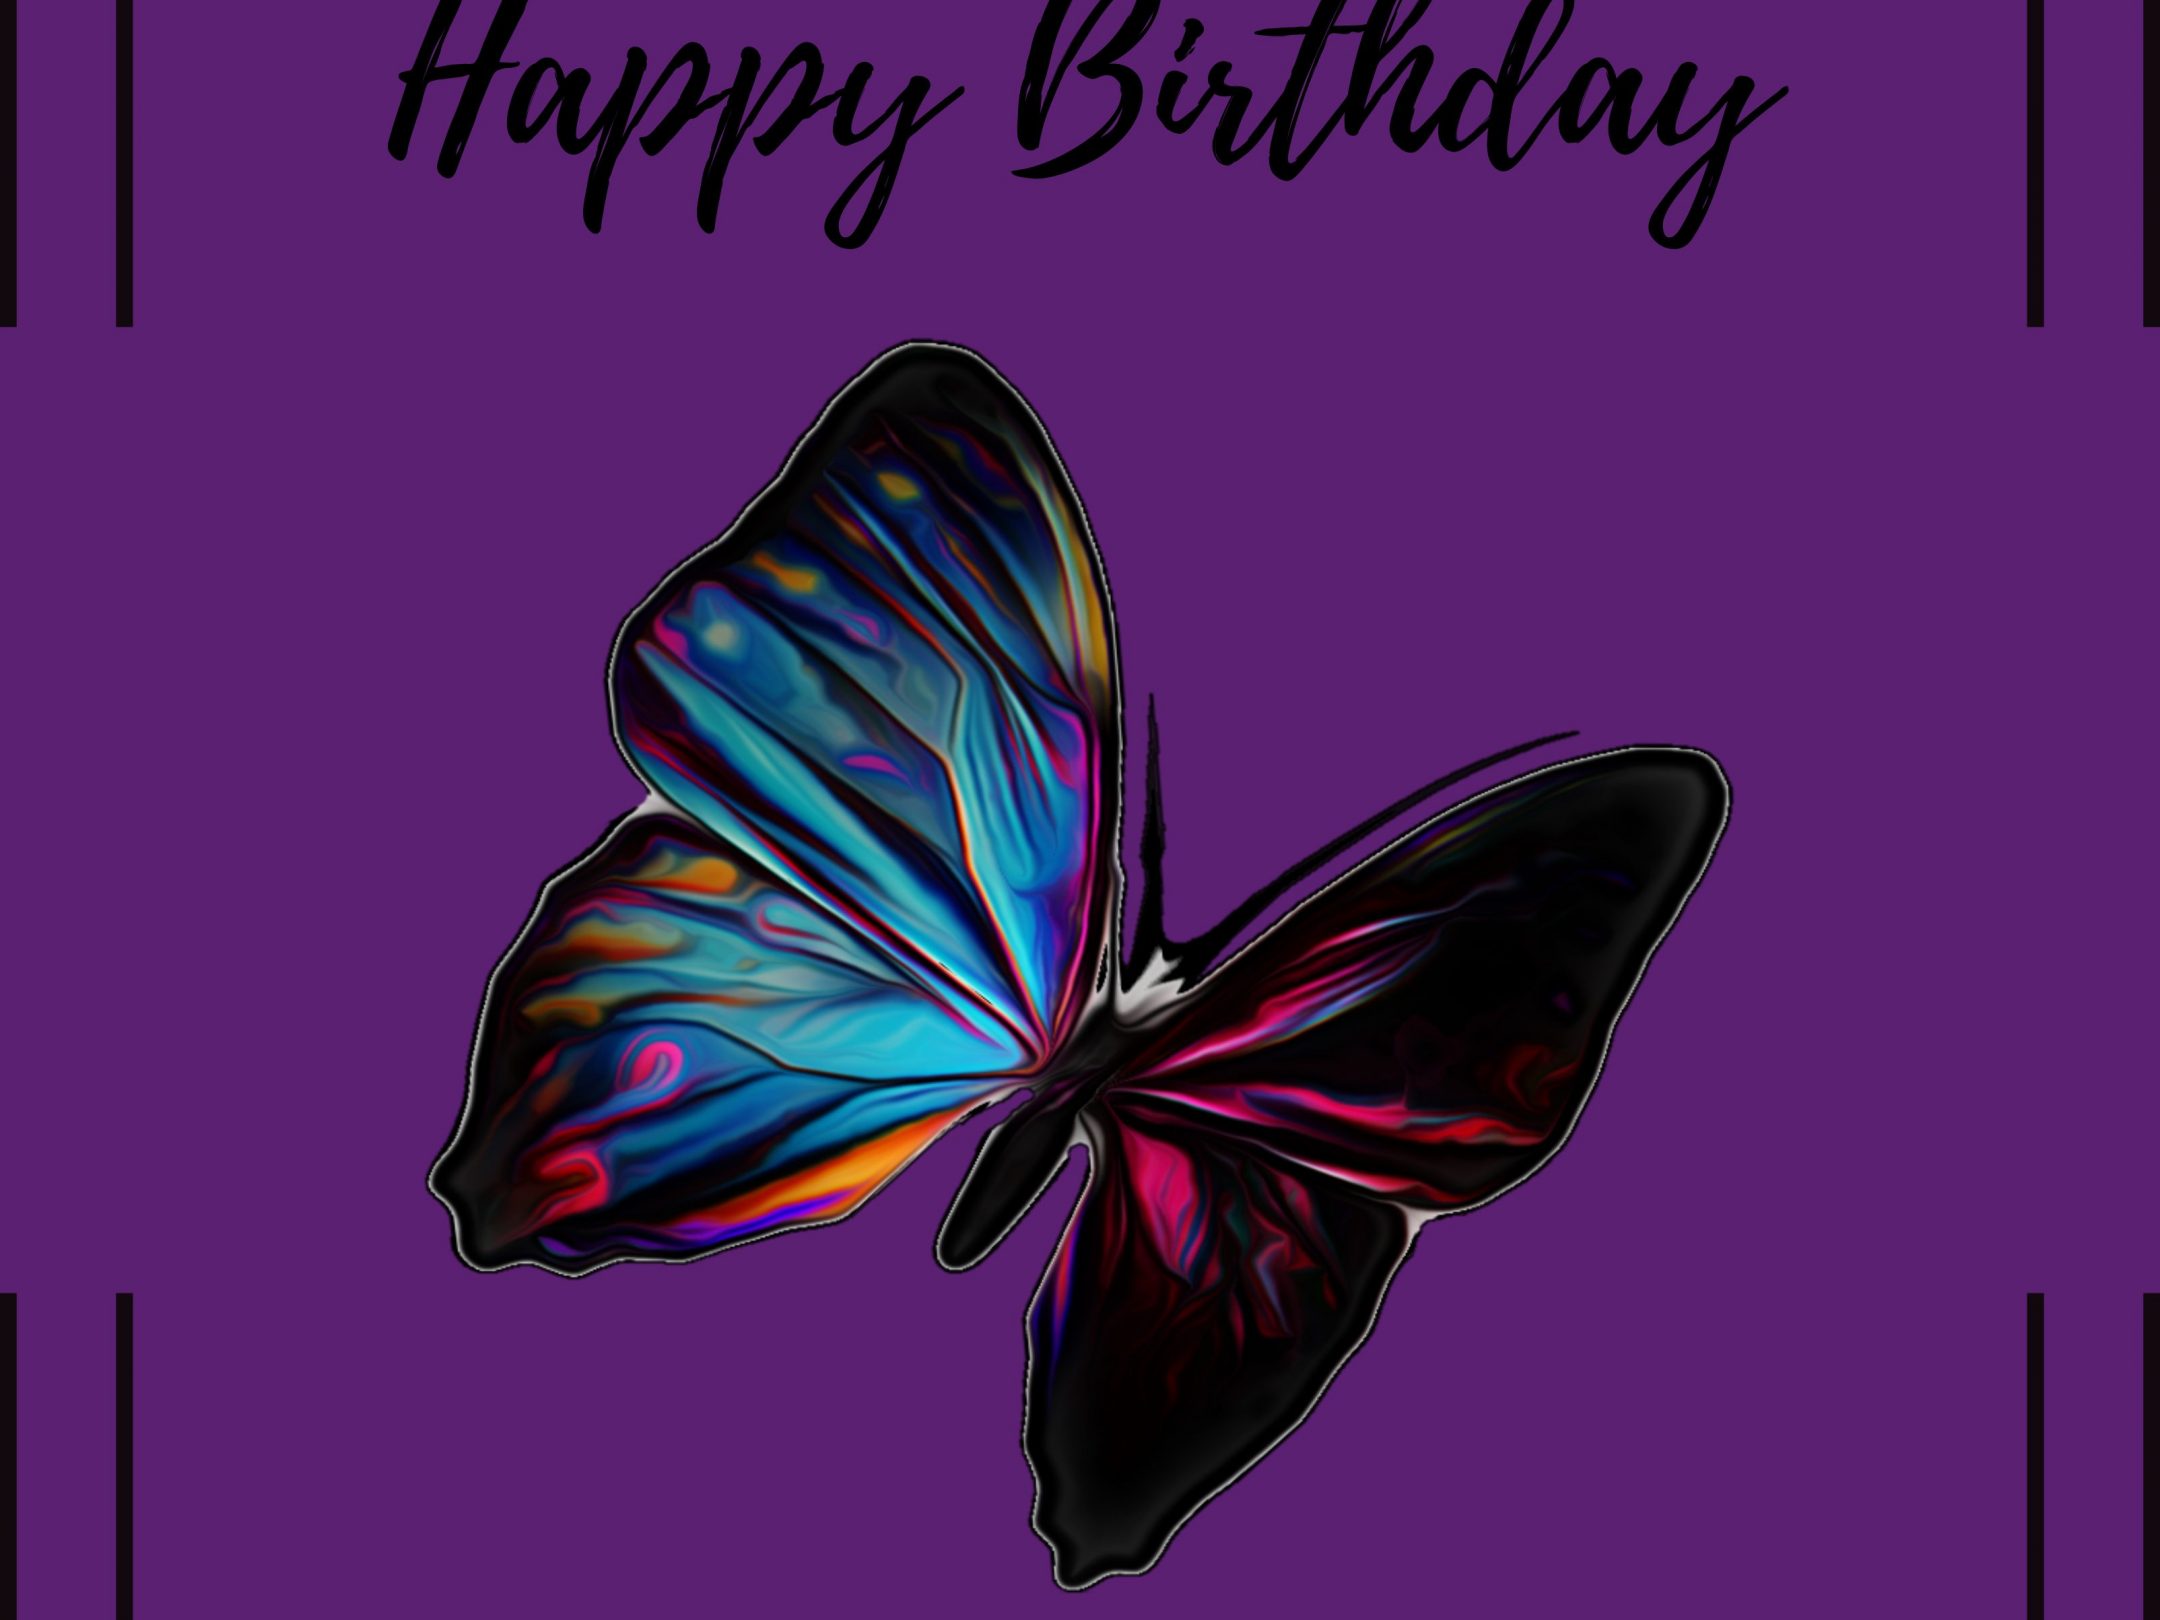 2160x1620 iPad wallpaper 4k Happy Birthday Rainbow Butterfly Ipad Wallpaper 2160x1620 pixels resolution